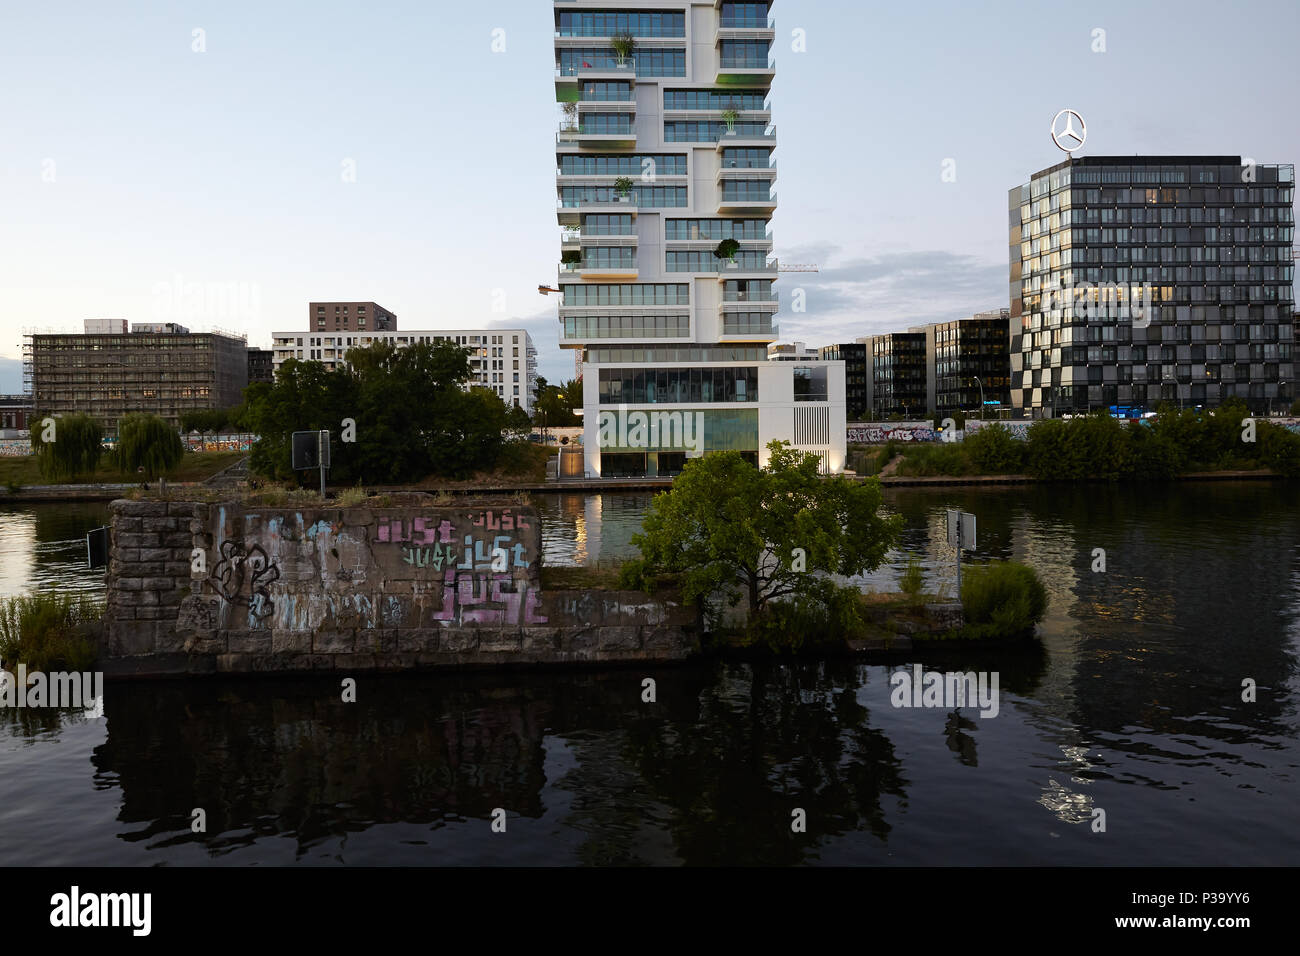 19.07.2016, Berlin, Berlin, Allemagne - Soir vue sur la Spree à Friedrichshain, avec les fondements de l'Brommy Bridge dans la rivière. Sur la banque Banque D'Images